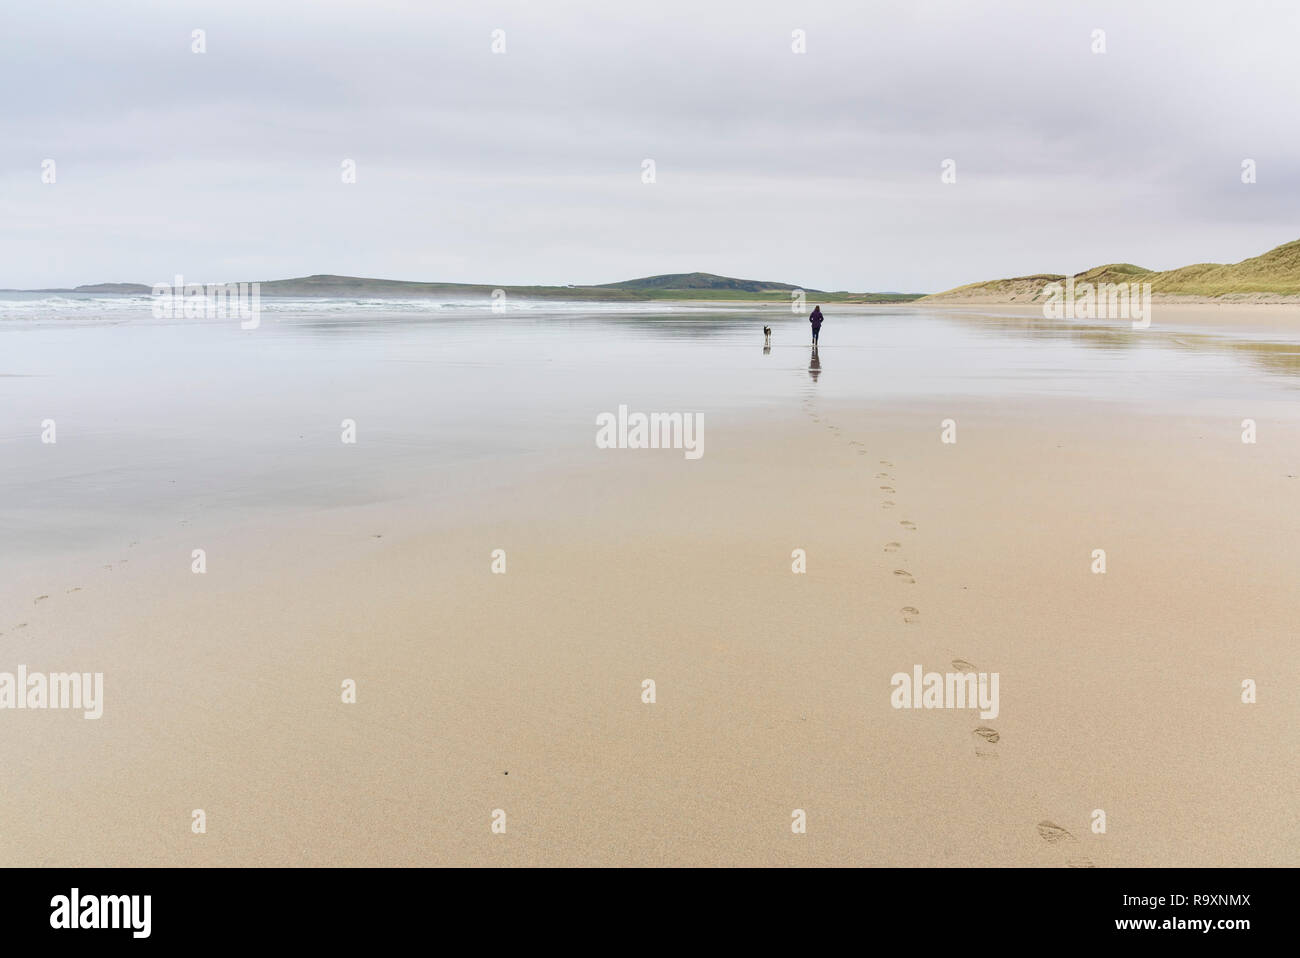 Femme promener son chien le long de Machir Bay, plage de Traigh Mhachir, Rhinns d'Islay, Hébrides intérieures, ARGYLL & BUTE, Ecosse Banque D'Images